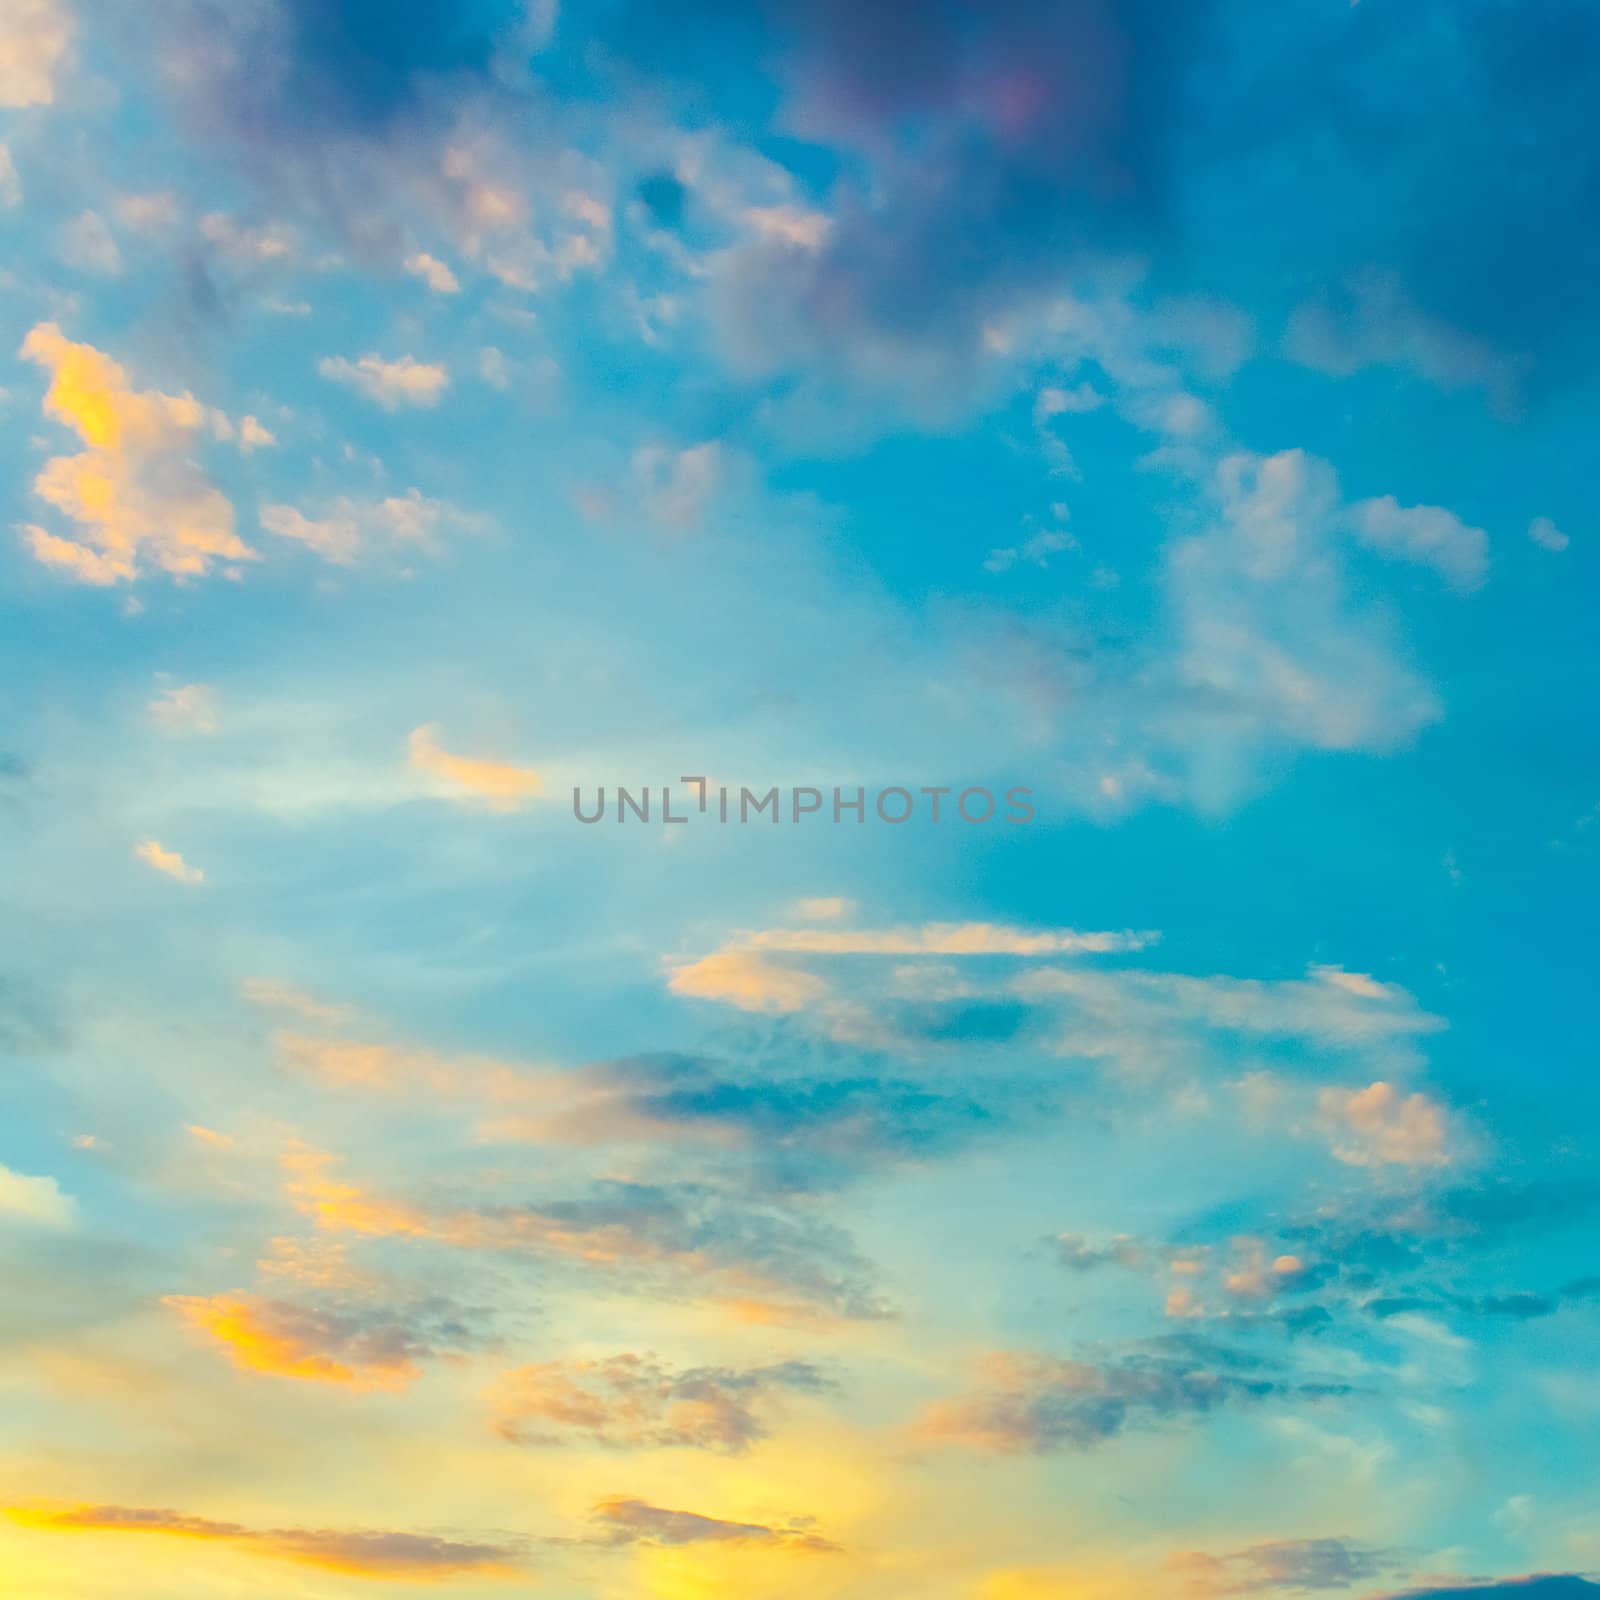 Blue Sunrise Sky With Sunlight by ryhor